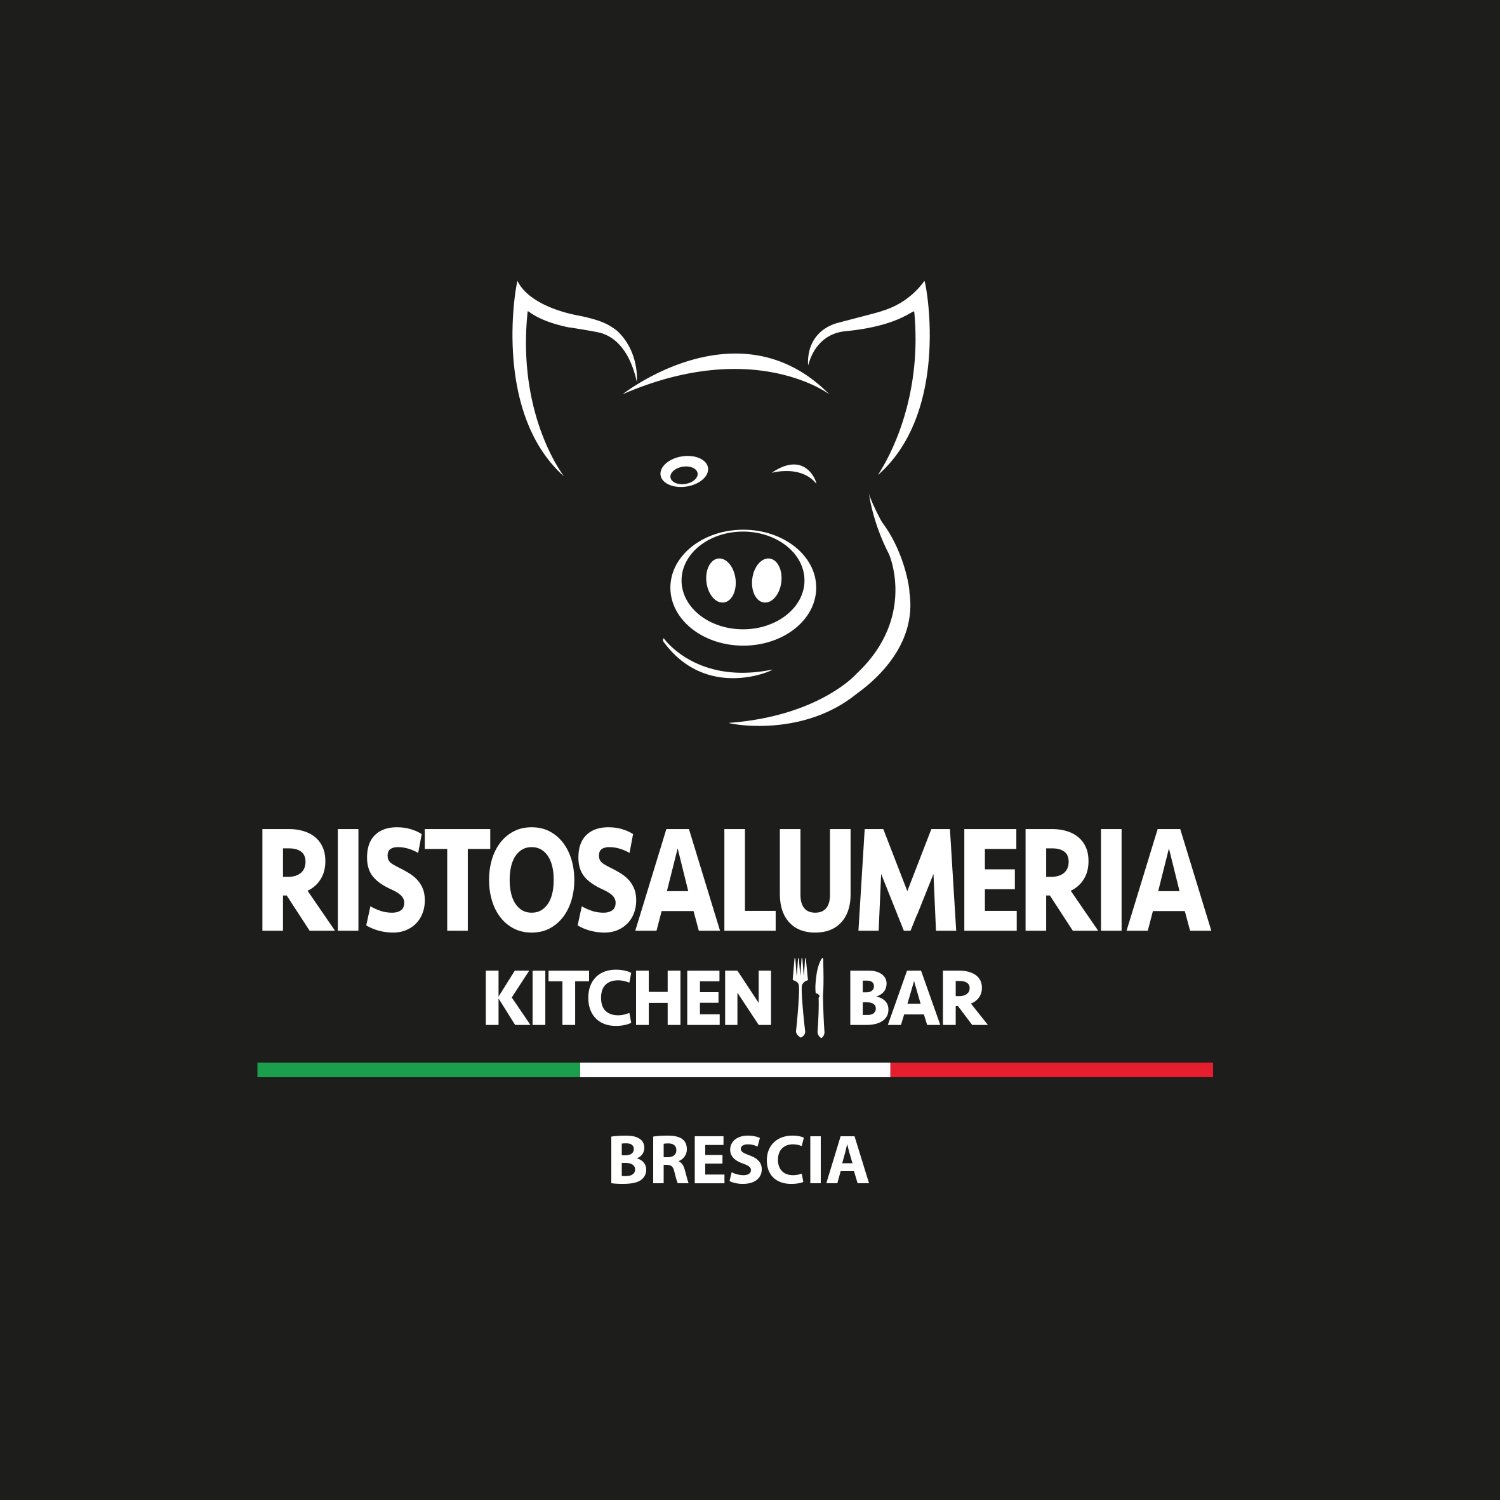 Ristosalumeria Brescia, Brescia